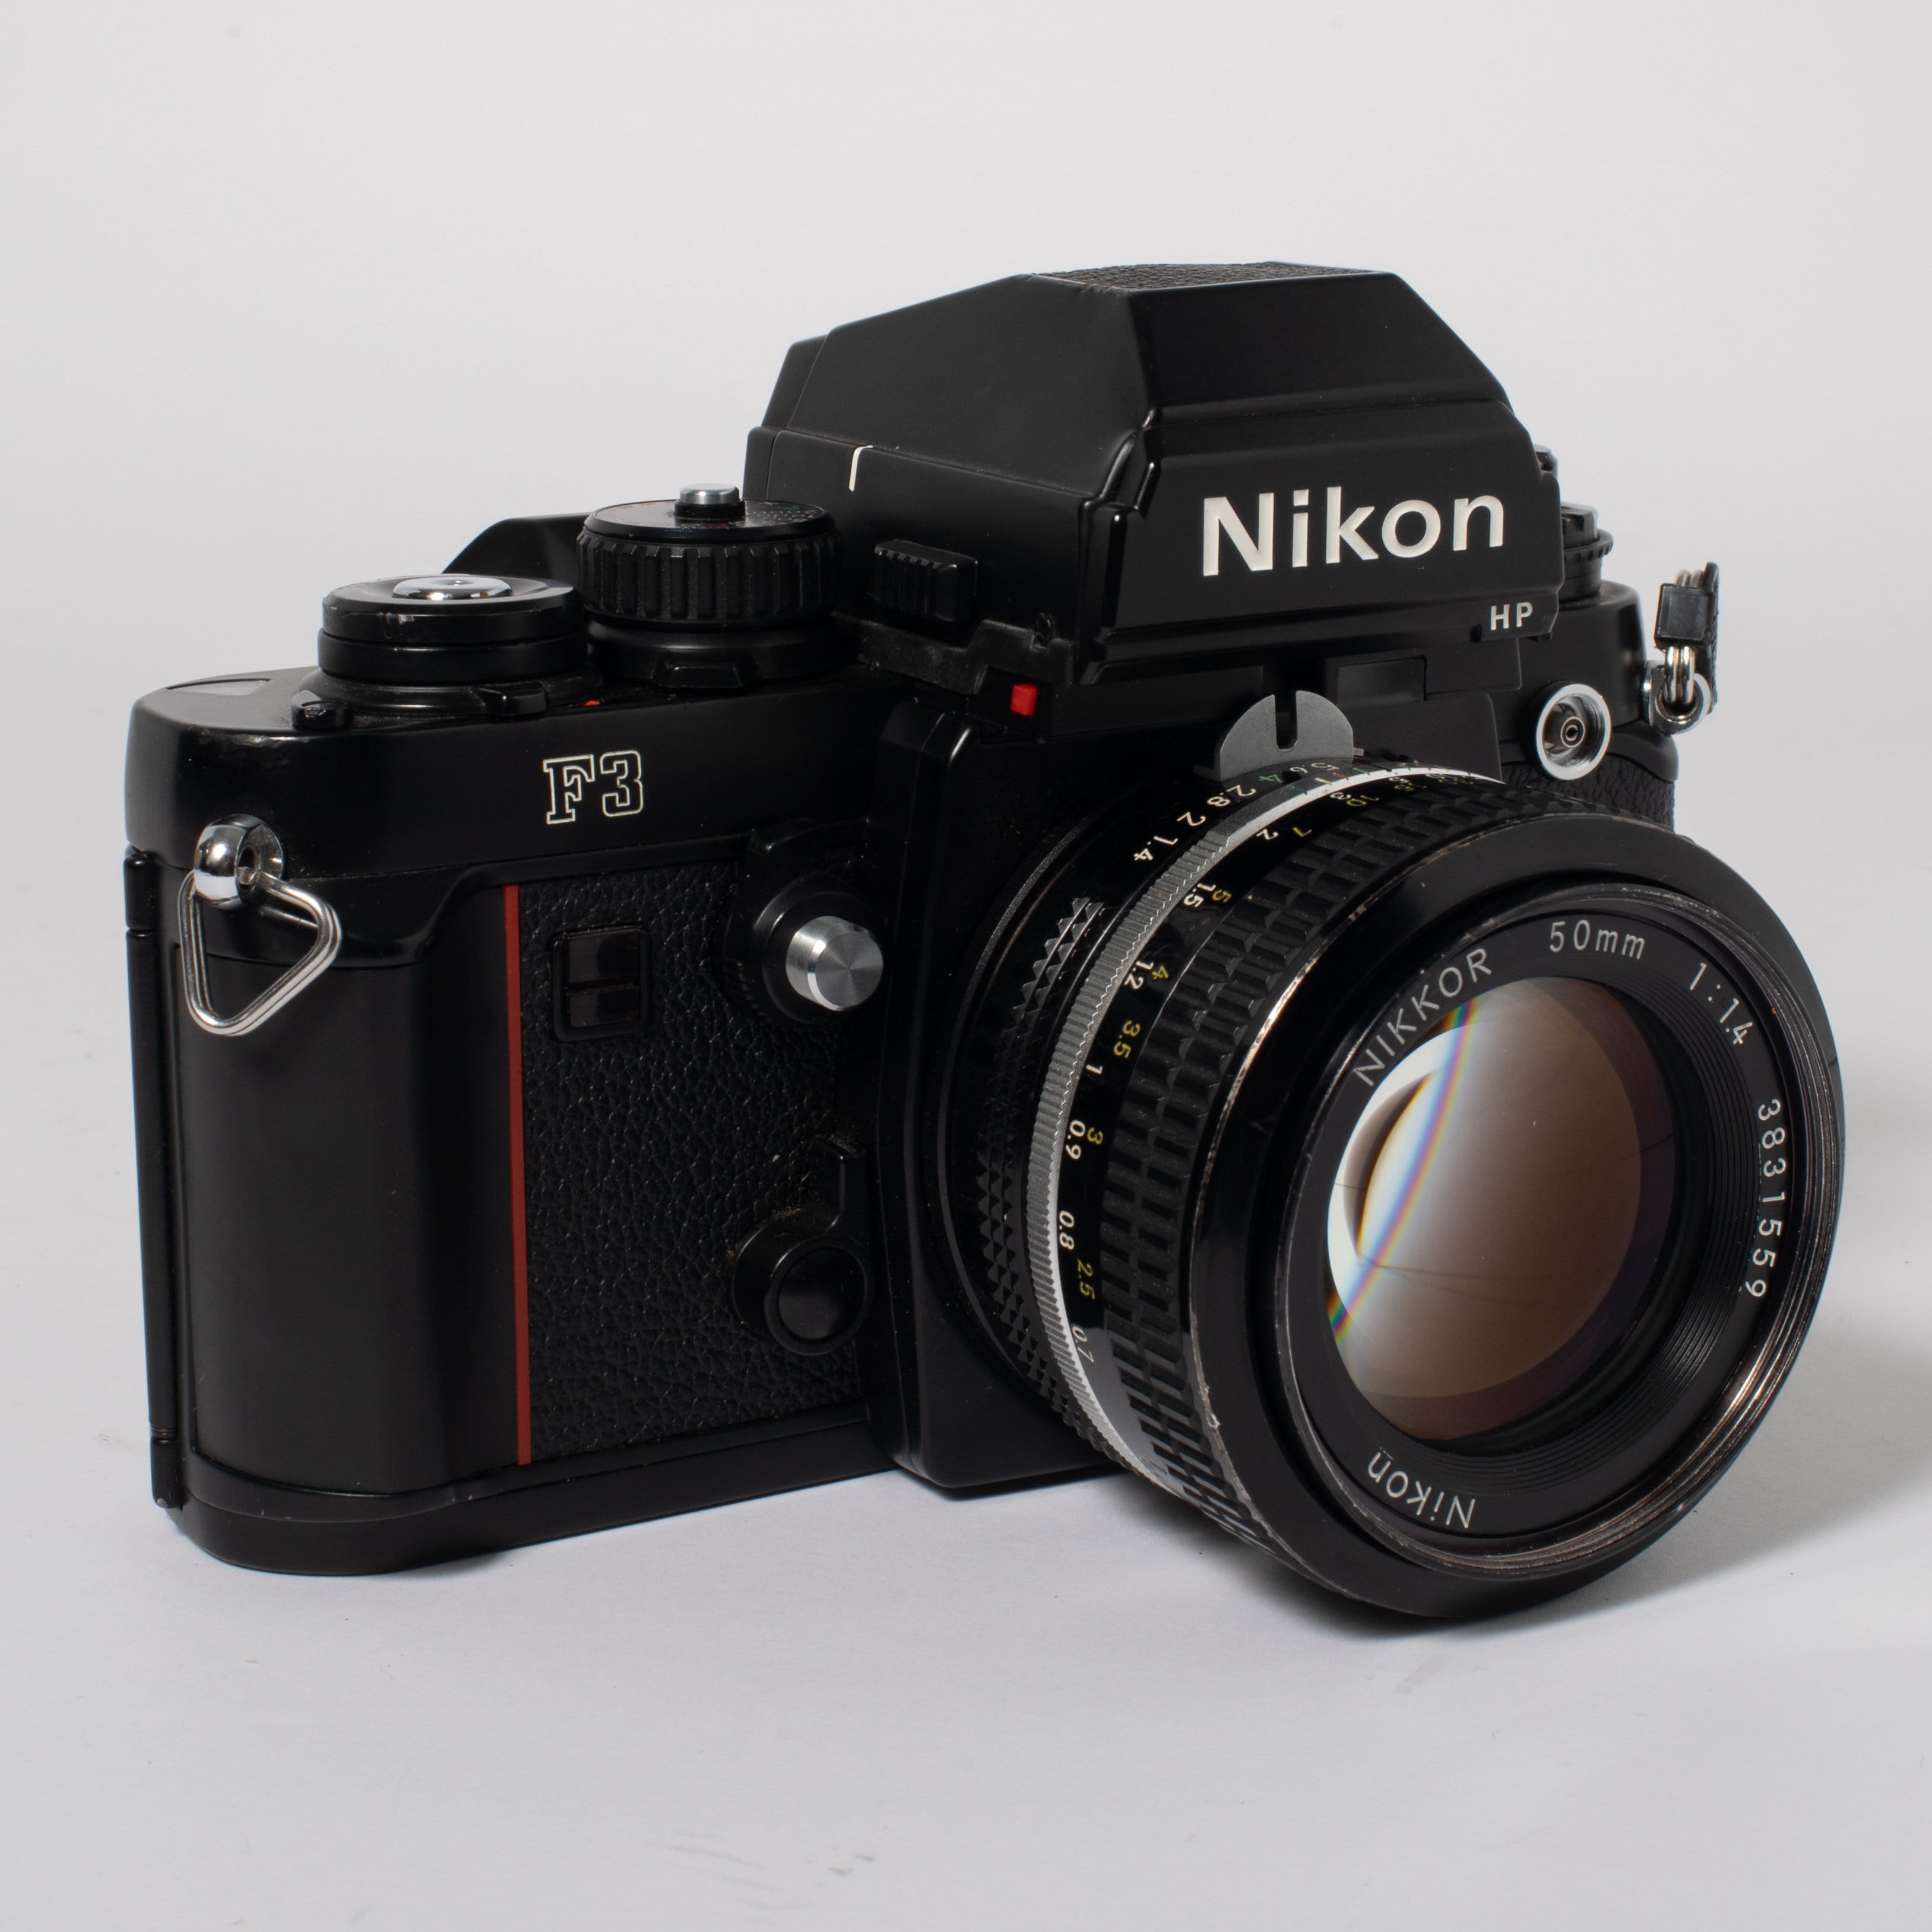 NikonF3 / NIKKOR 50mm F1.4